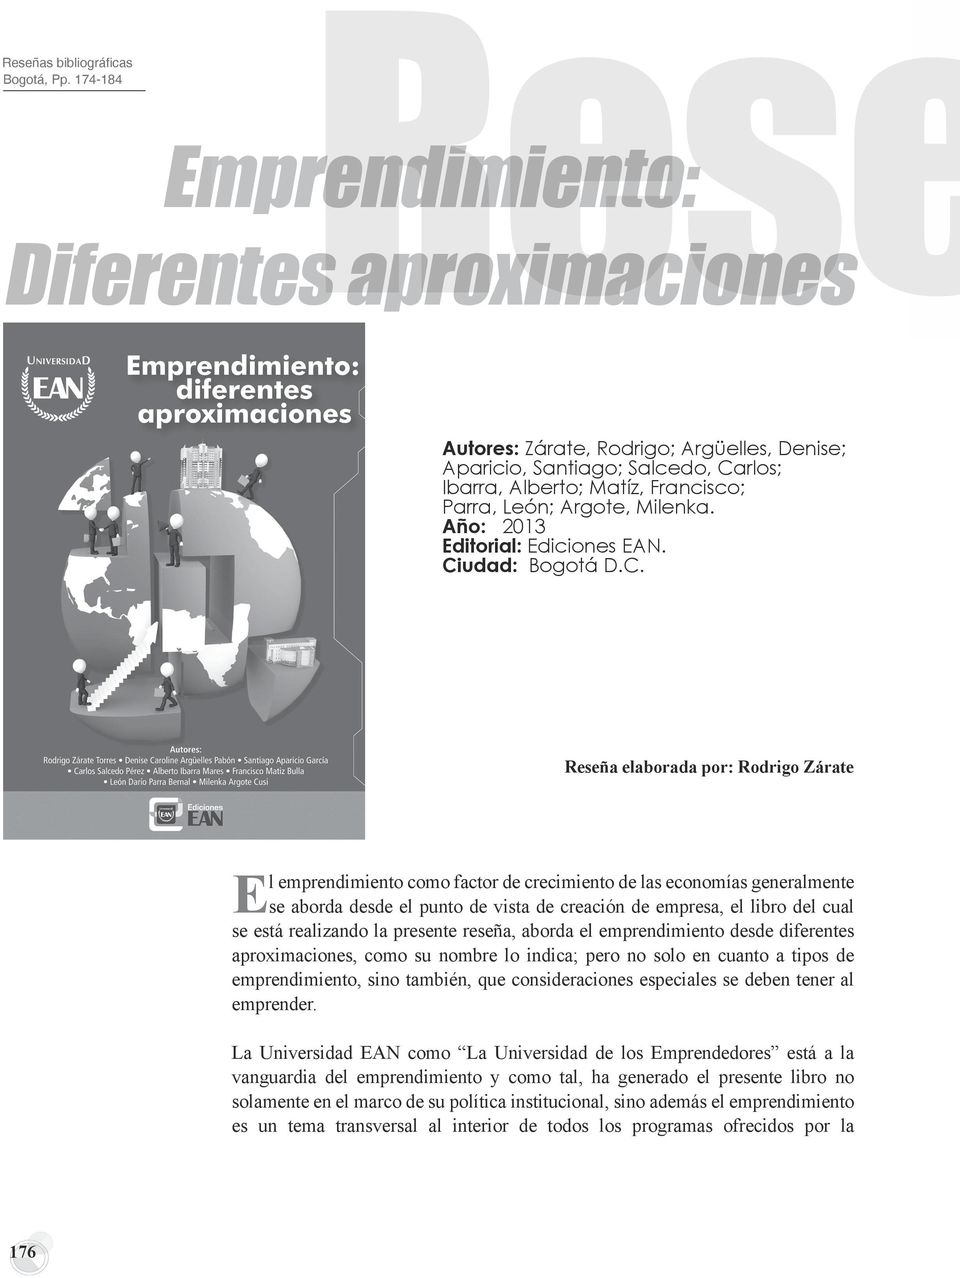 Milenka. Año: 2013 Editorial: Ediciones EAN. Ci